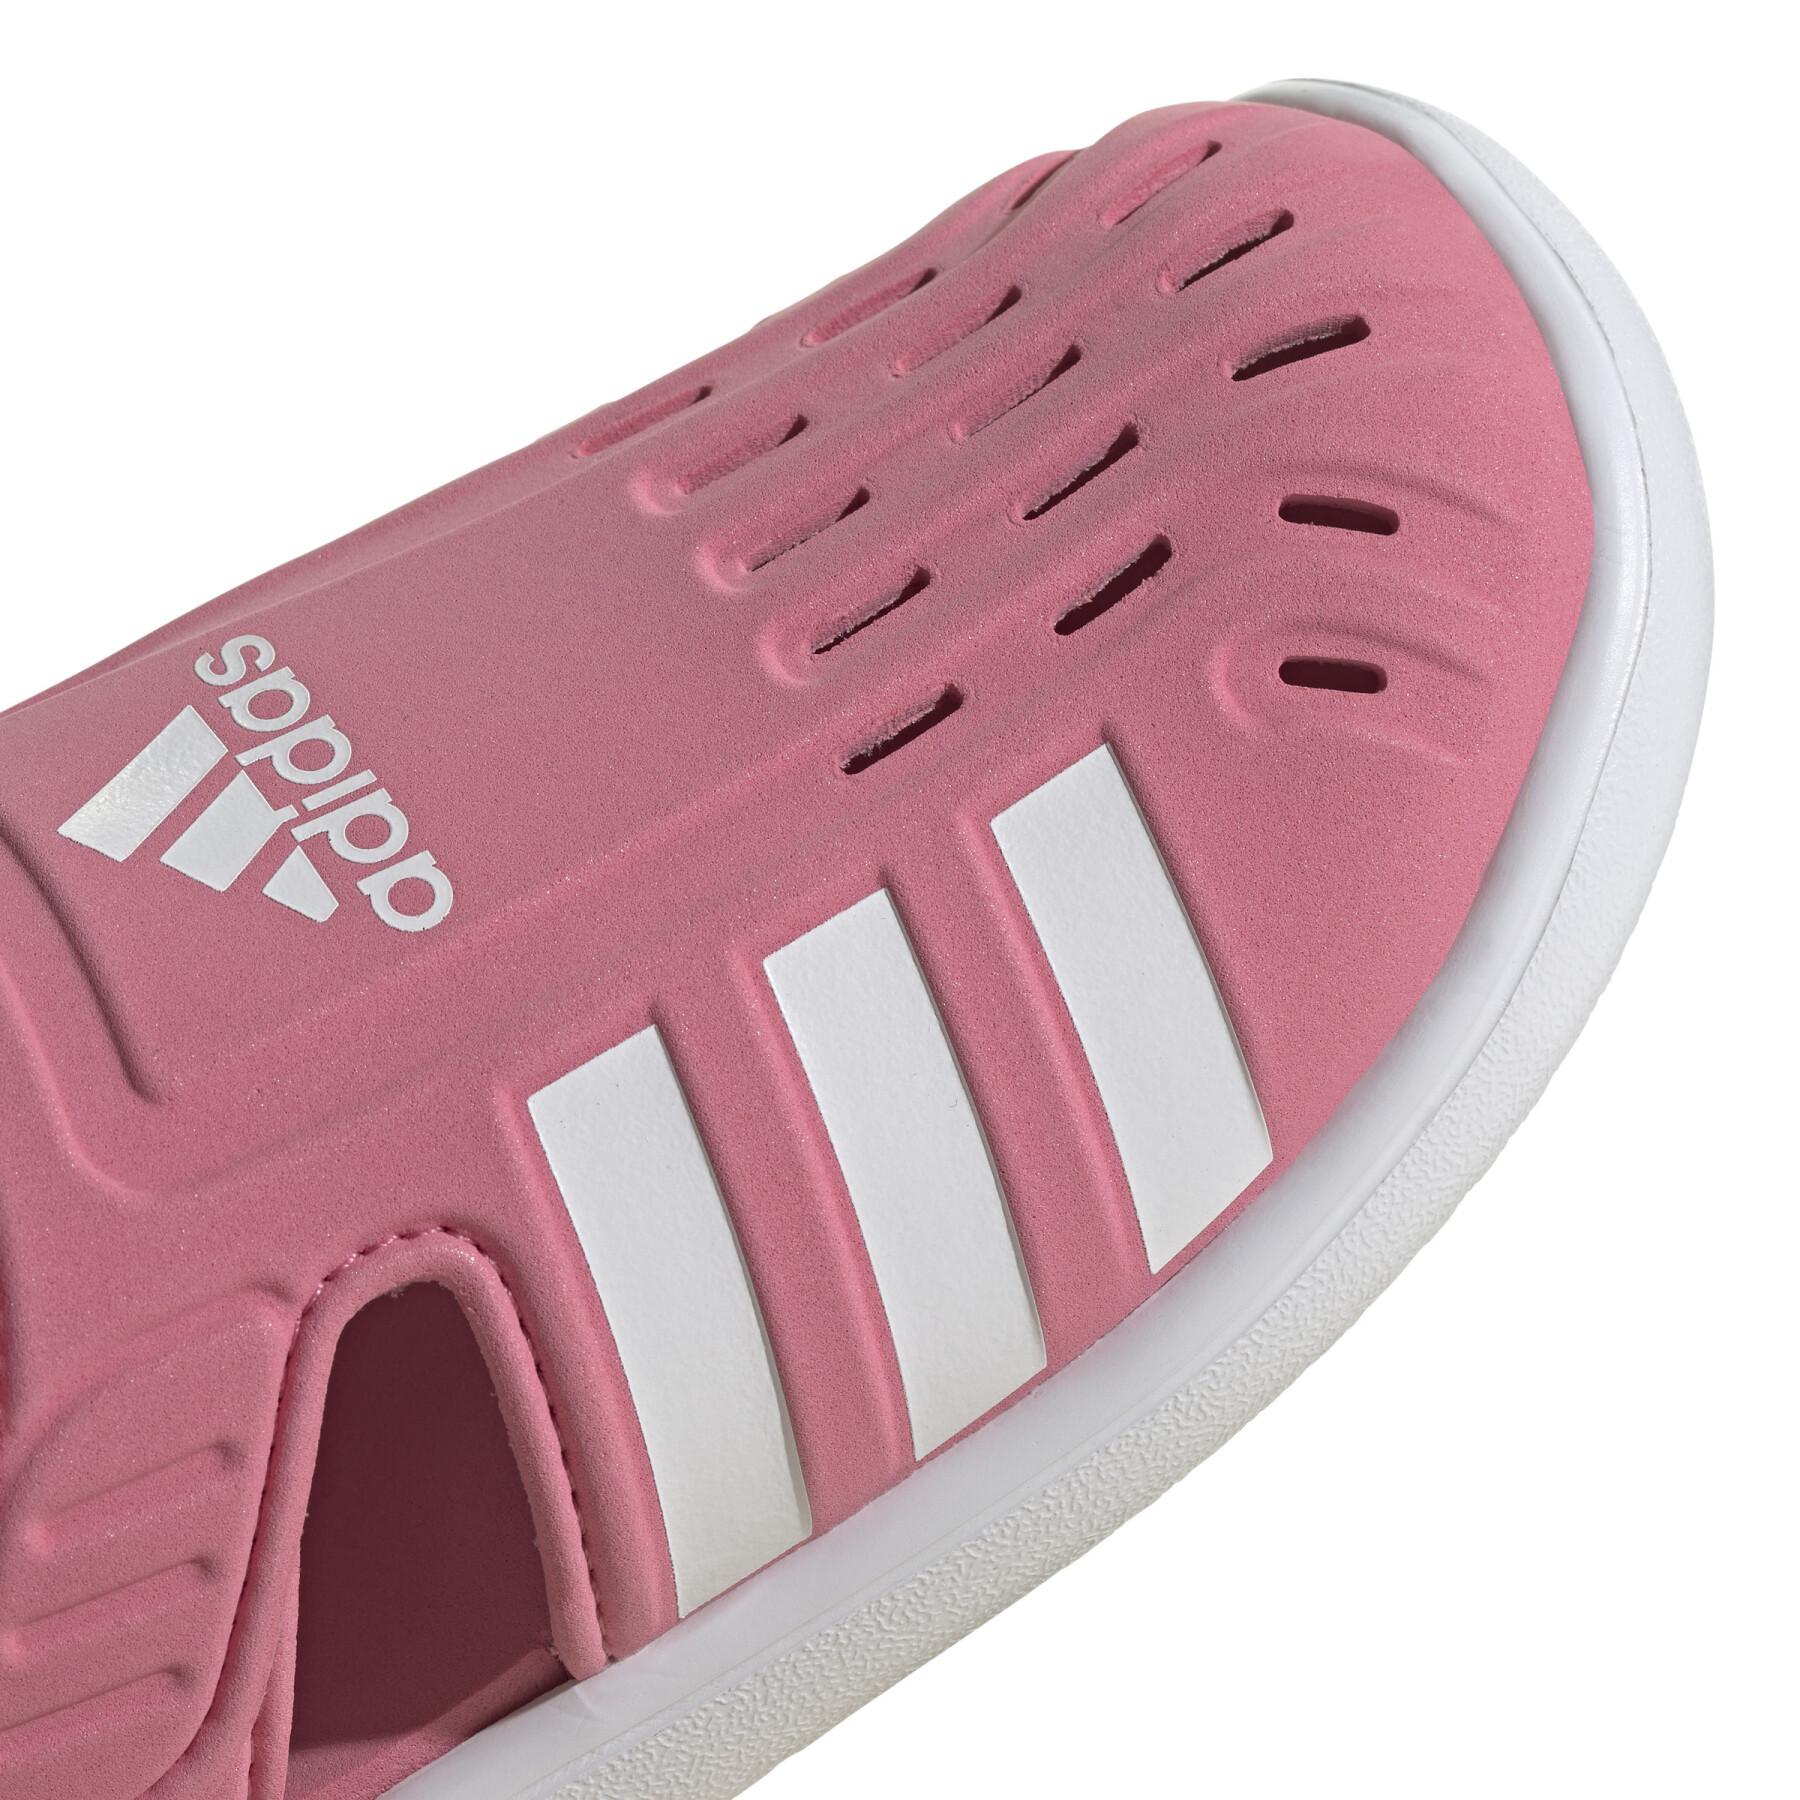 Sandali per bambini adidas Summer Closed Toe Water